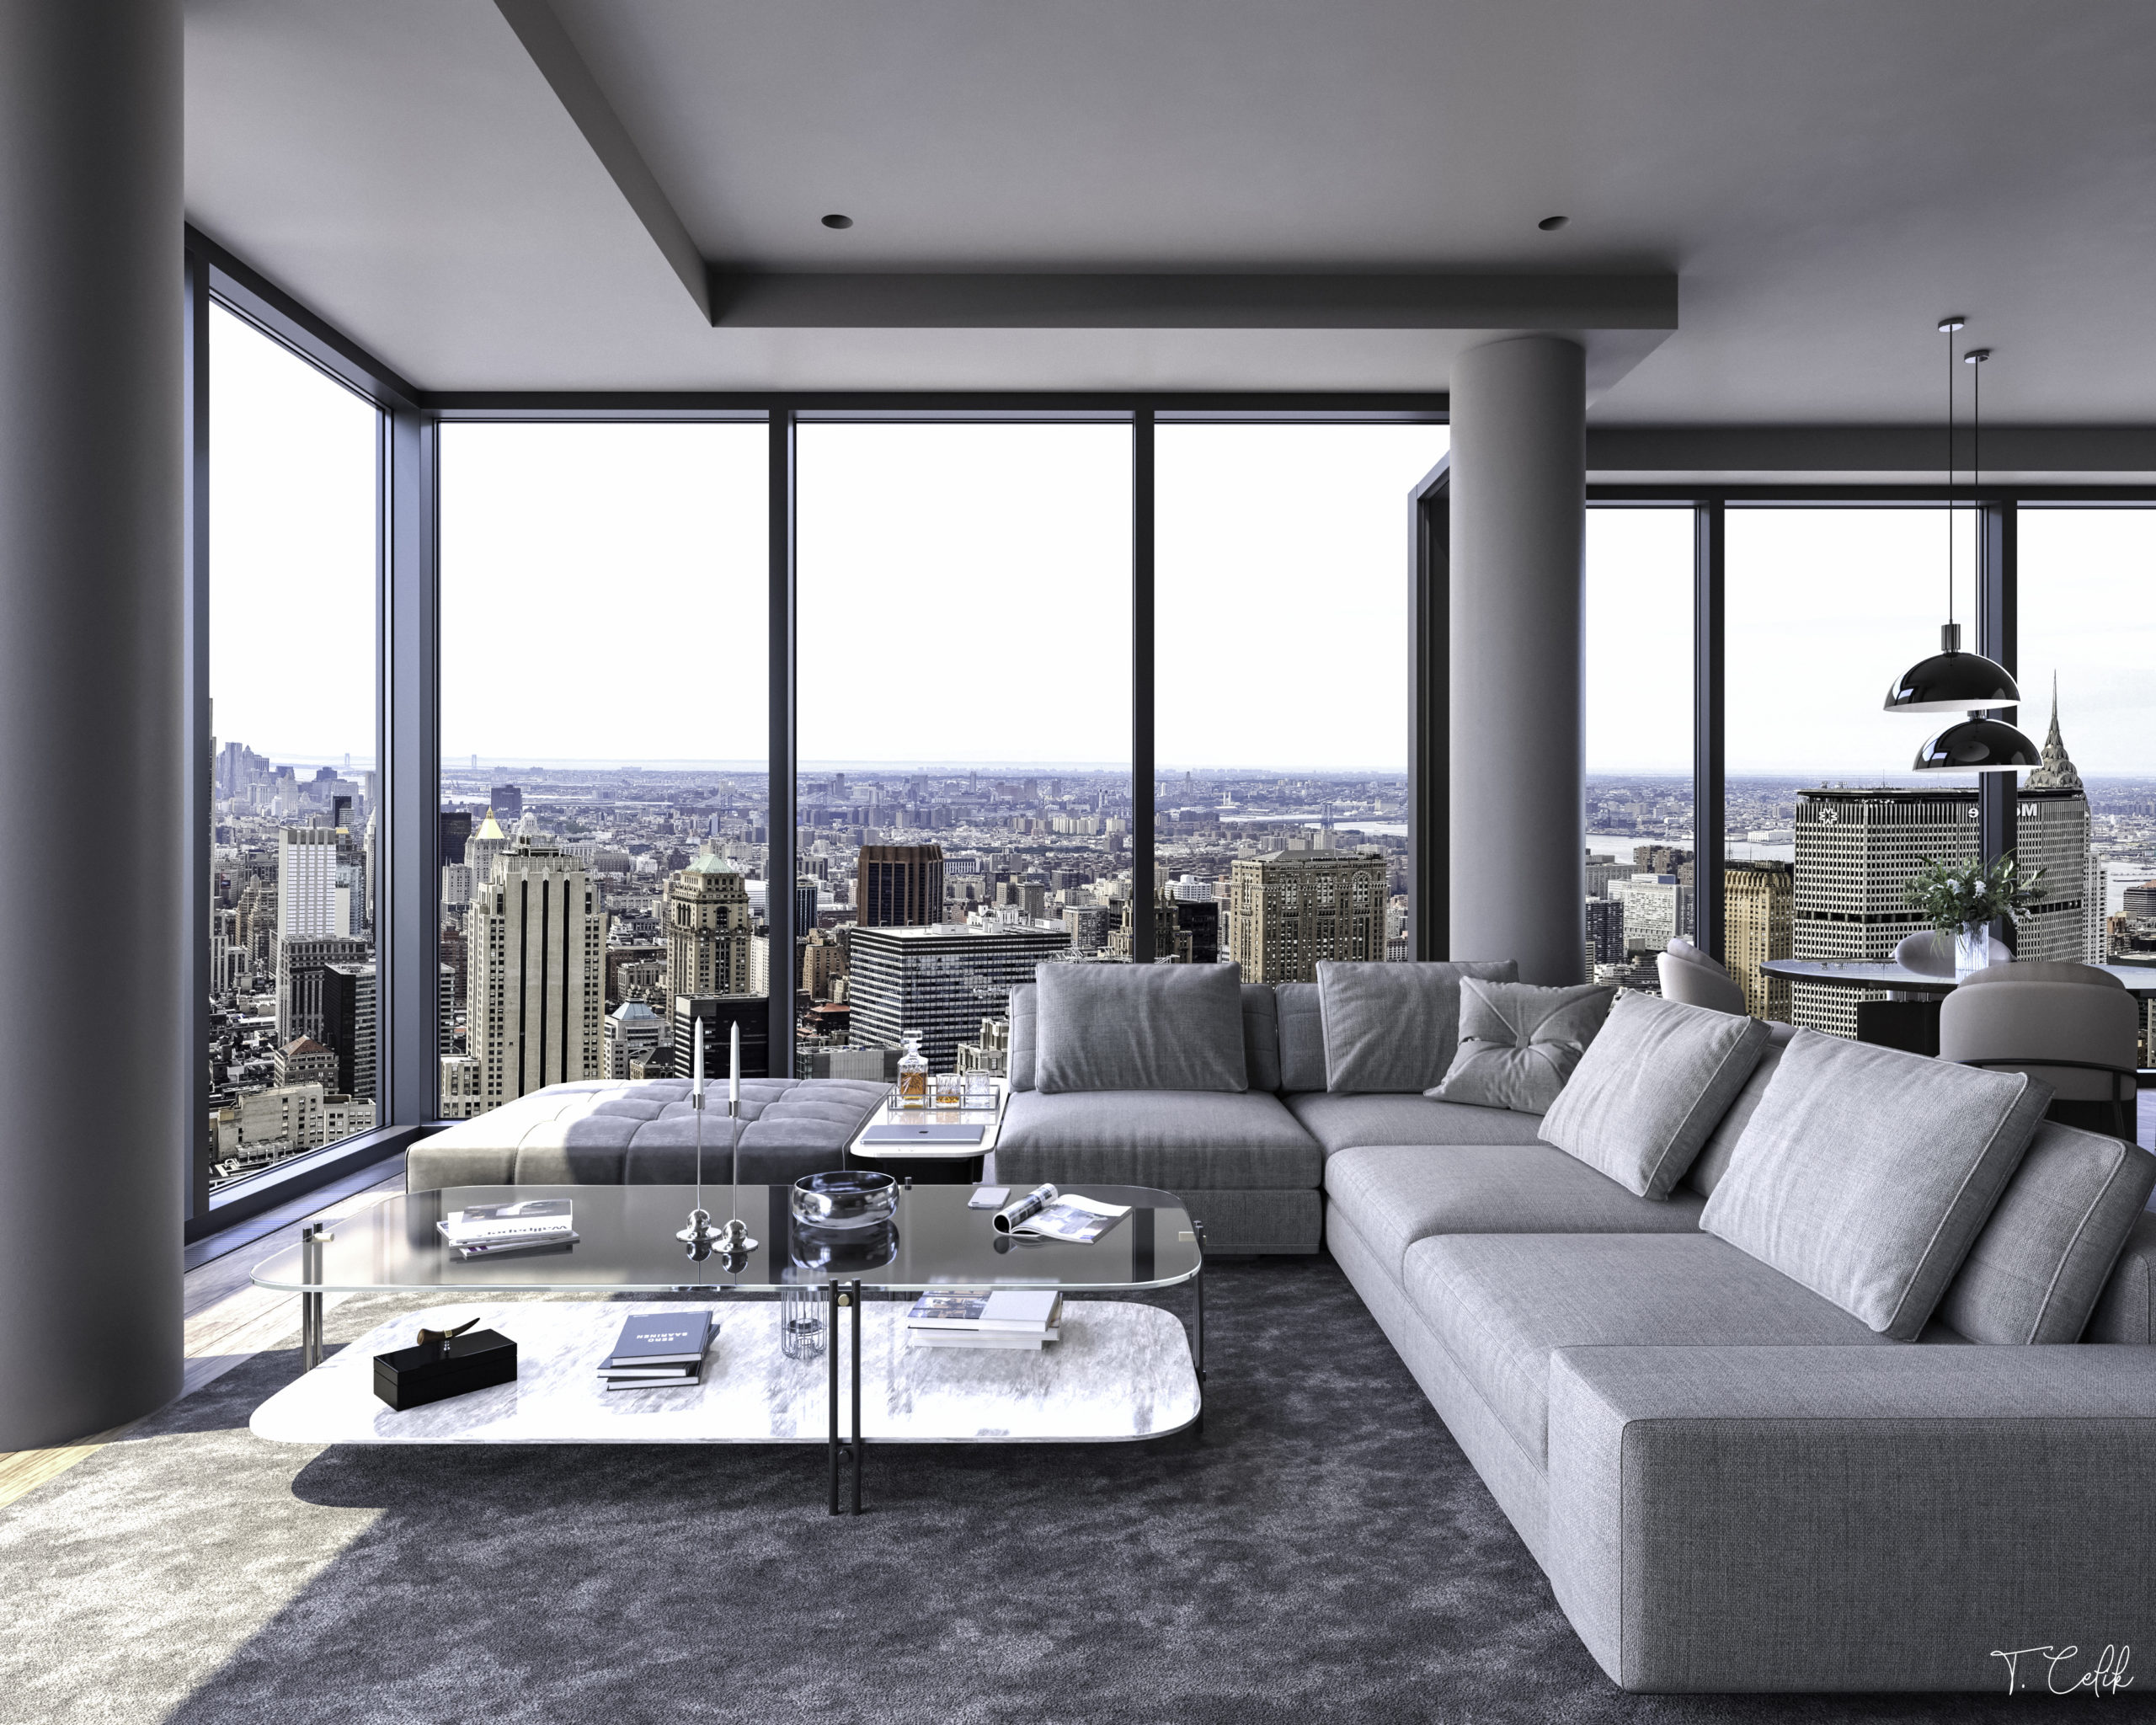 NYC Apartment Interior Design Ideas